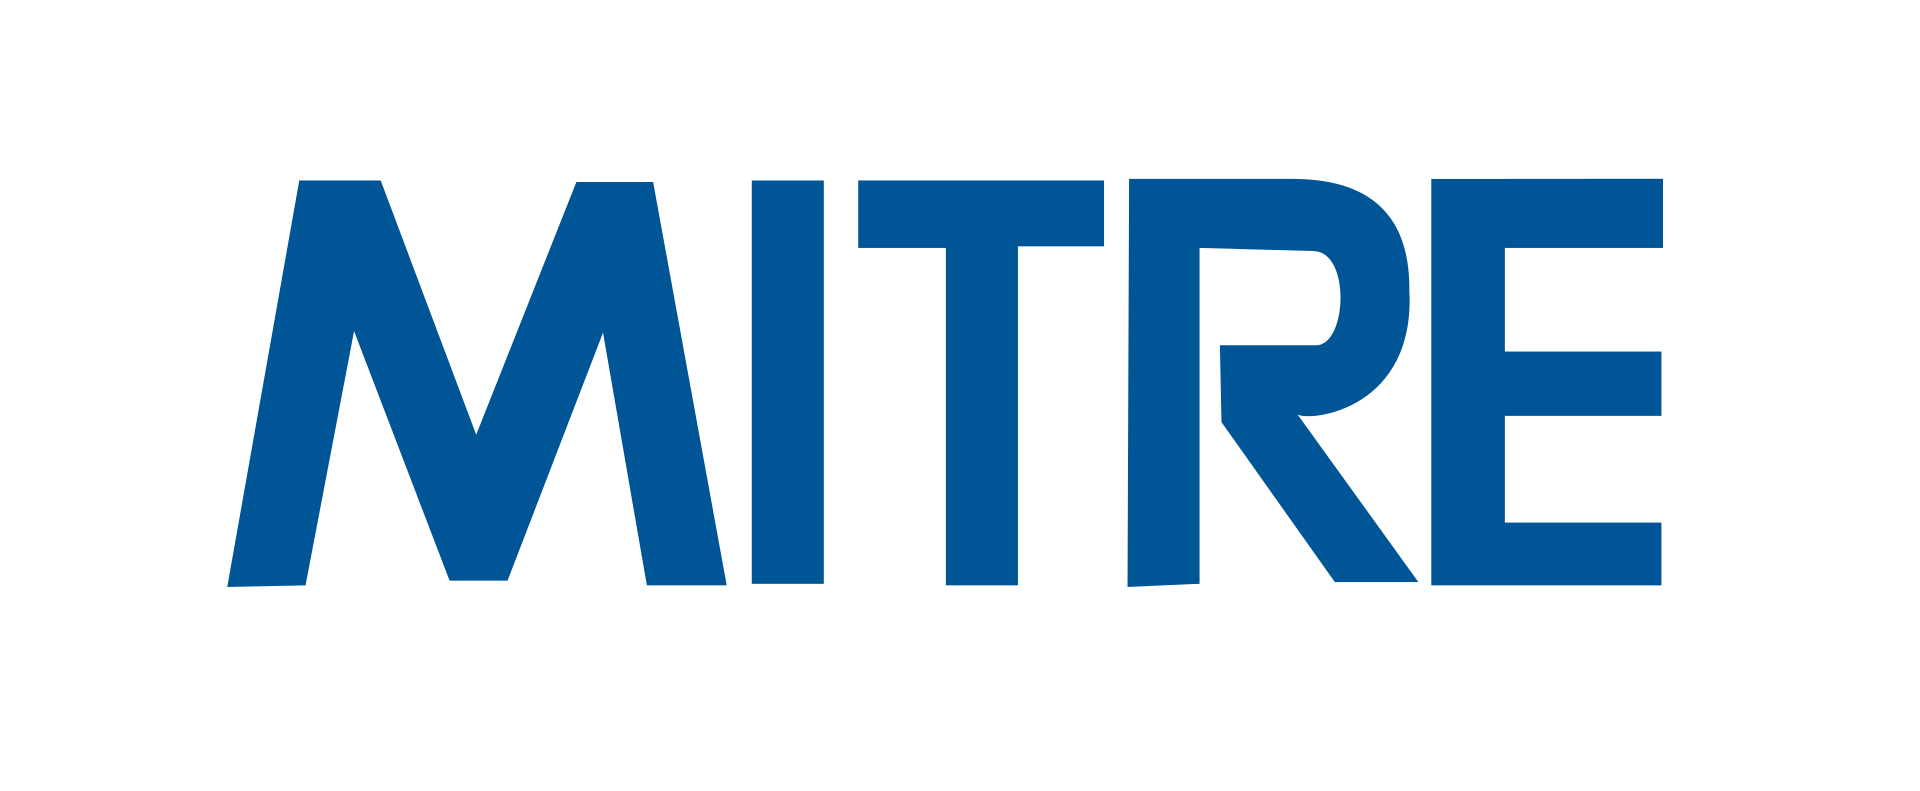 1920px-Mitre_Corporation_logo.png